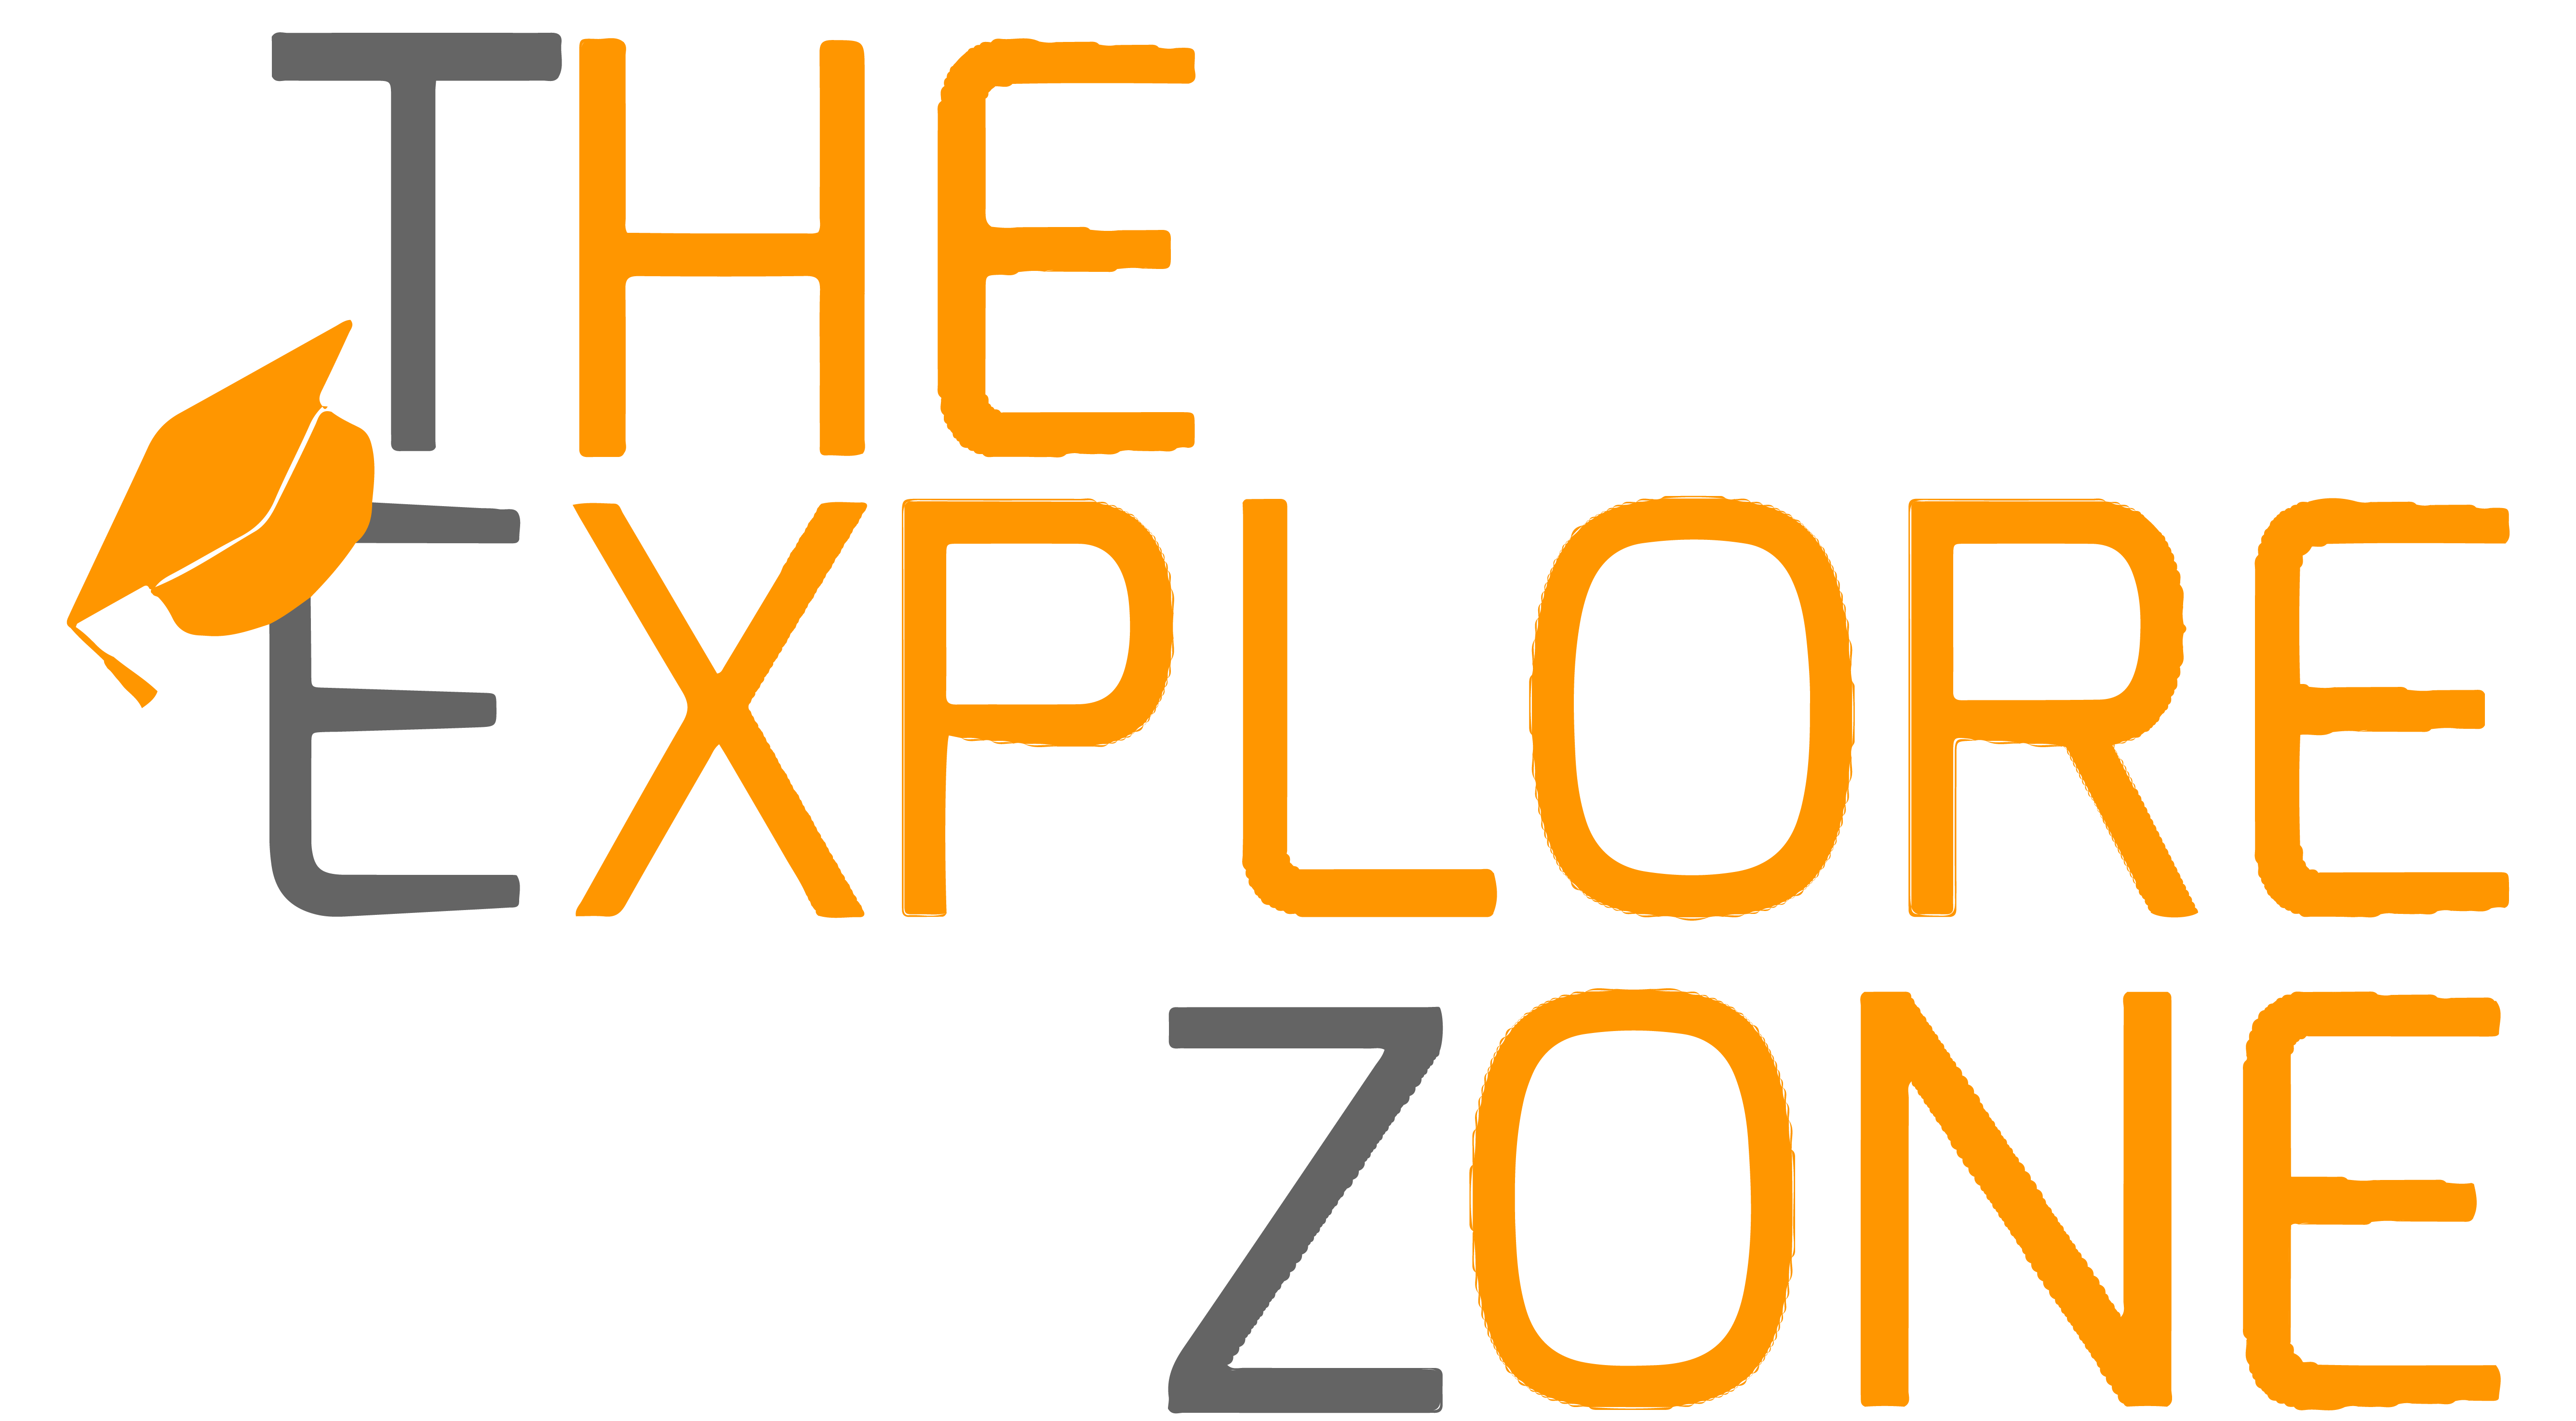 The Explore Zone